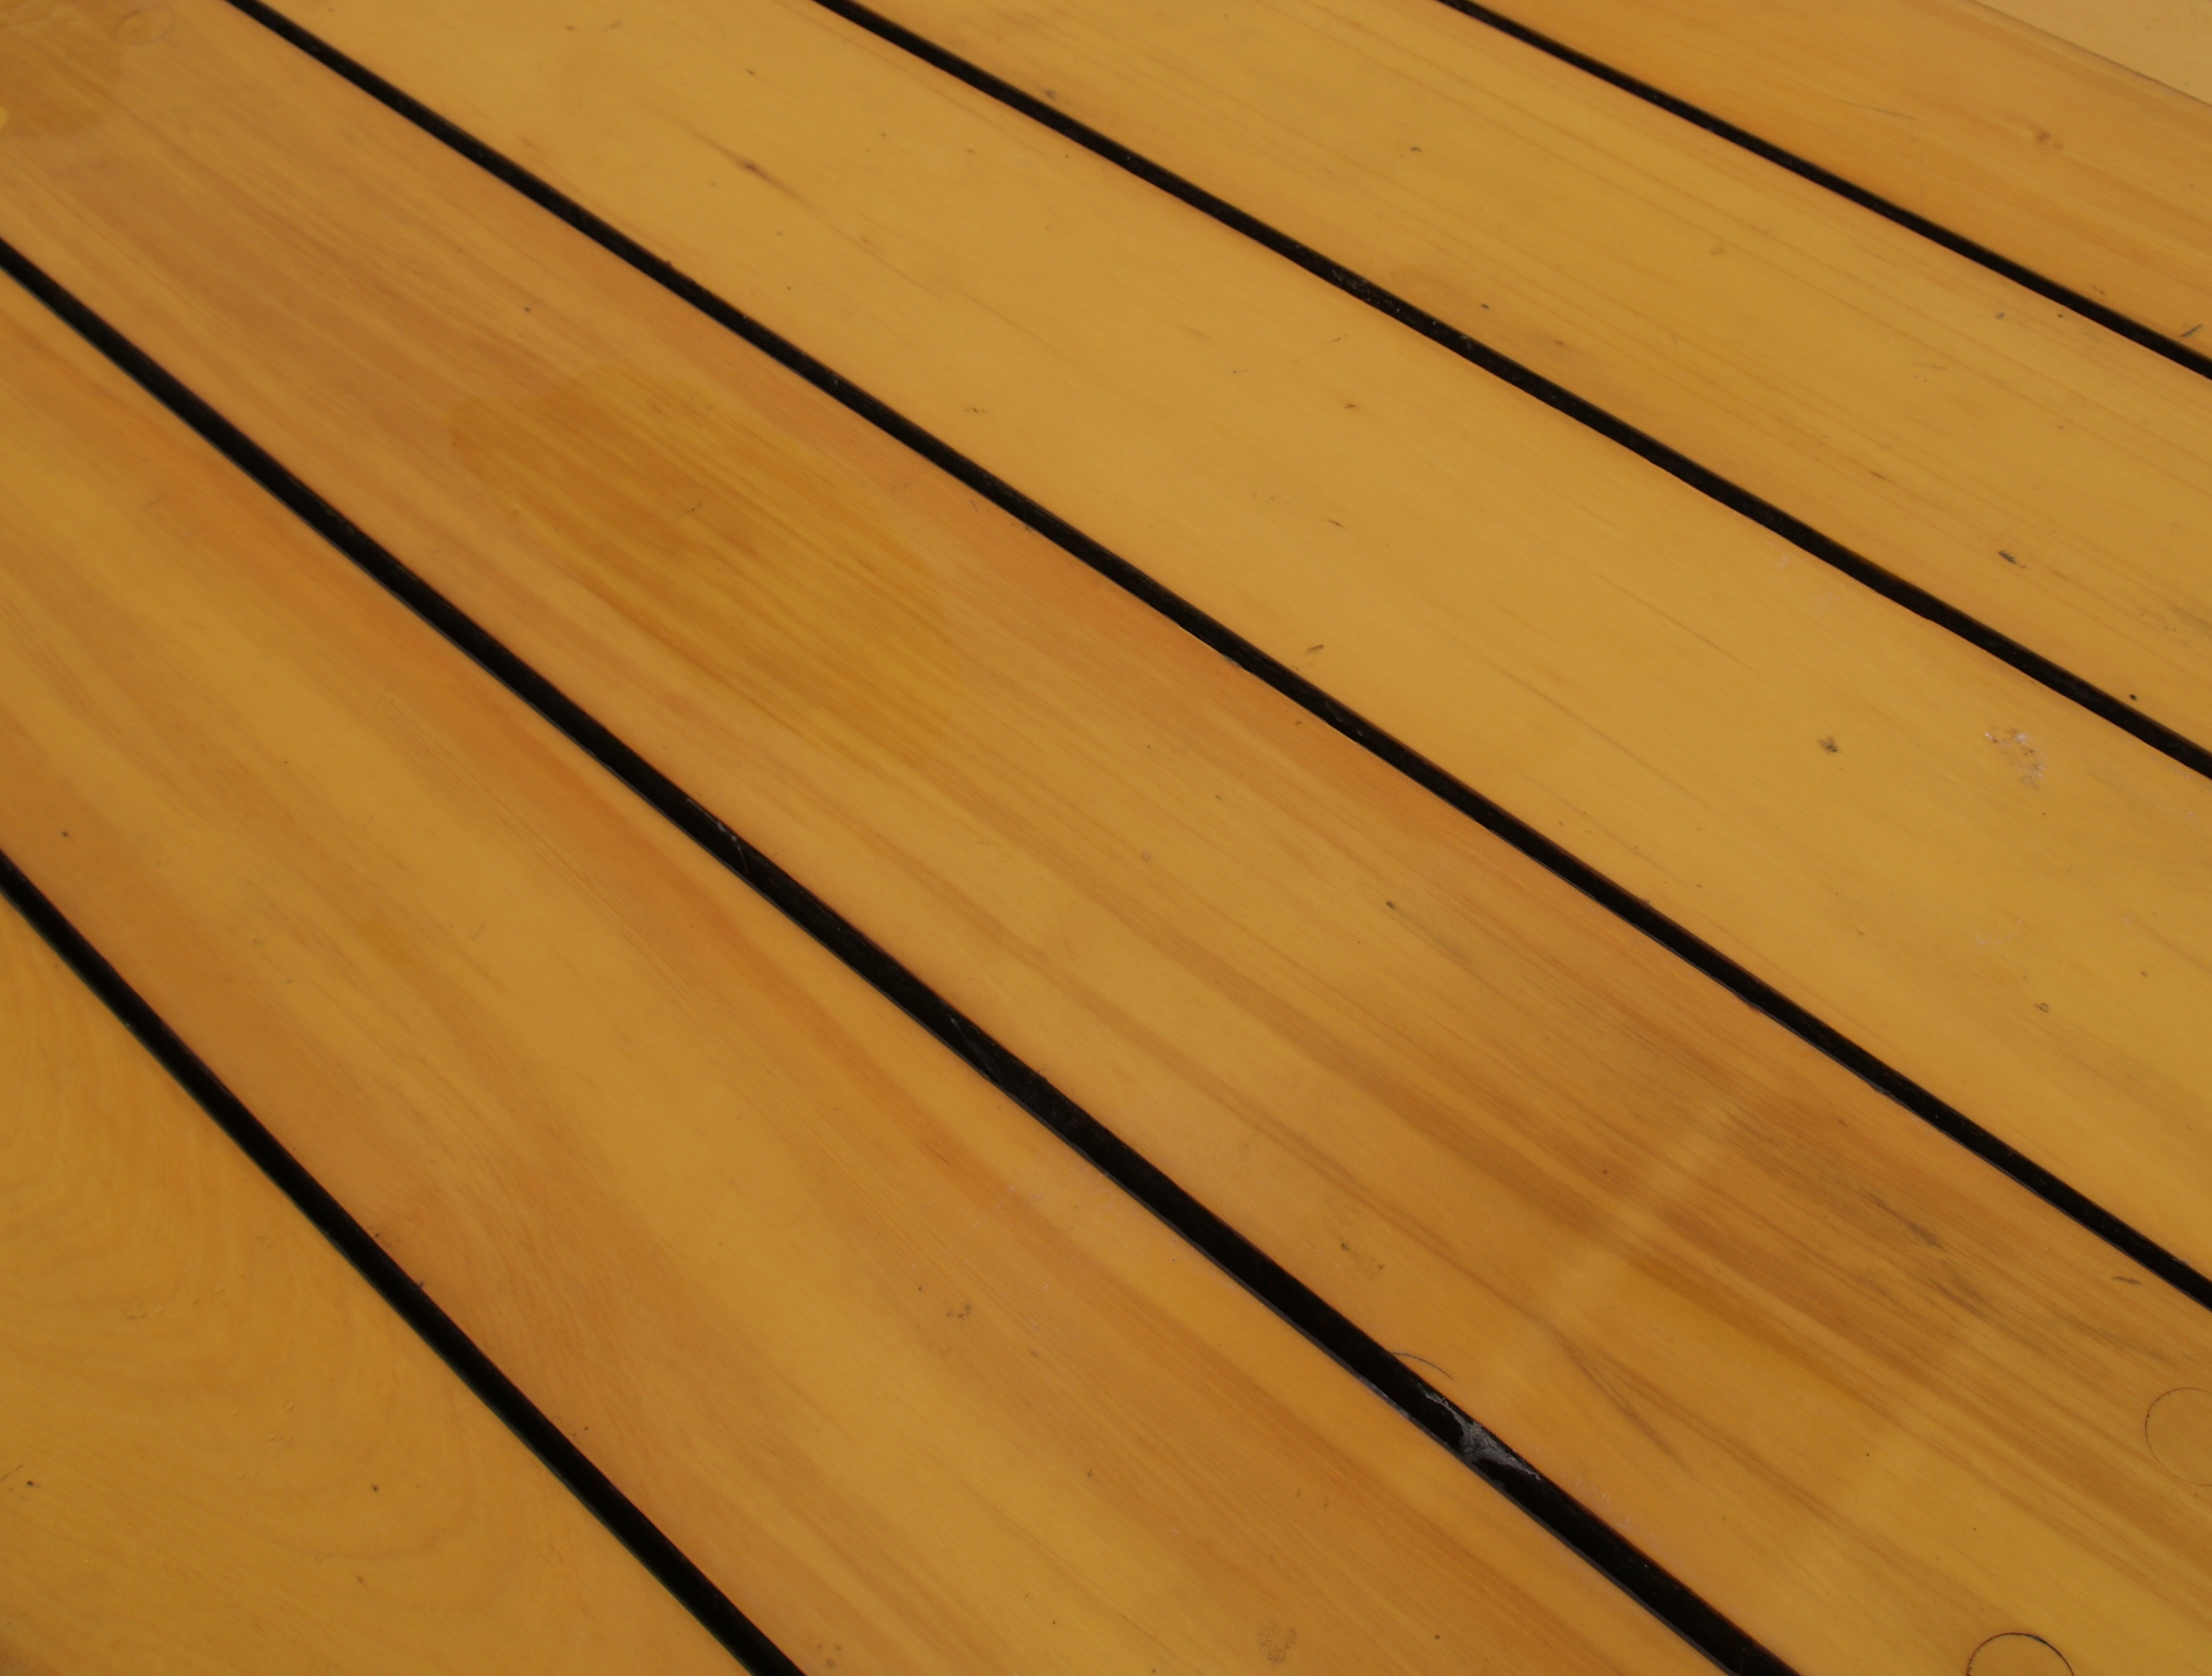 дерево, деревянные панели, текстура древесины - обои на рабочий стол